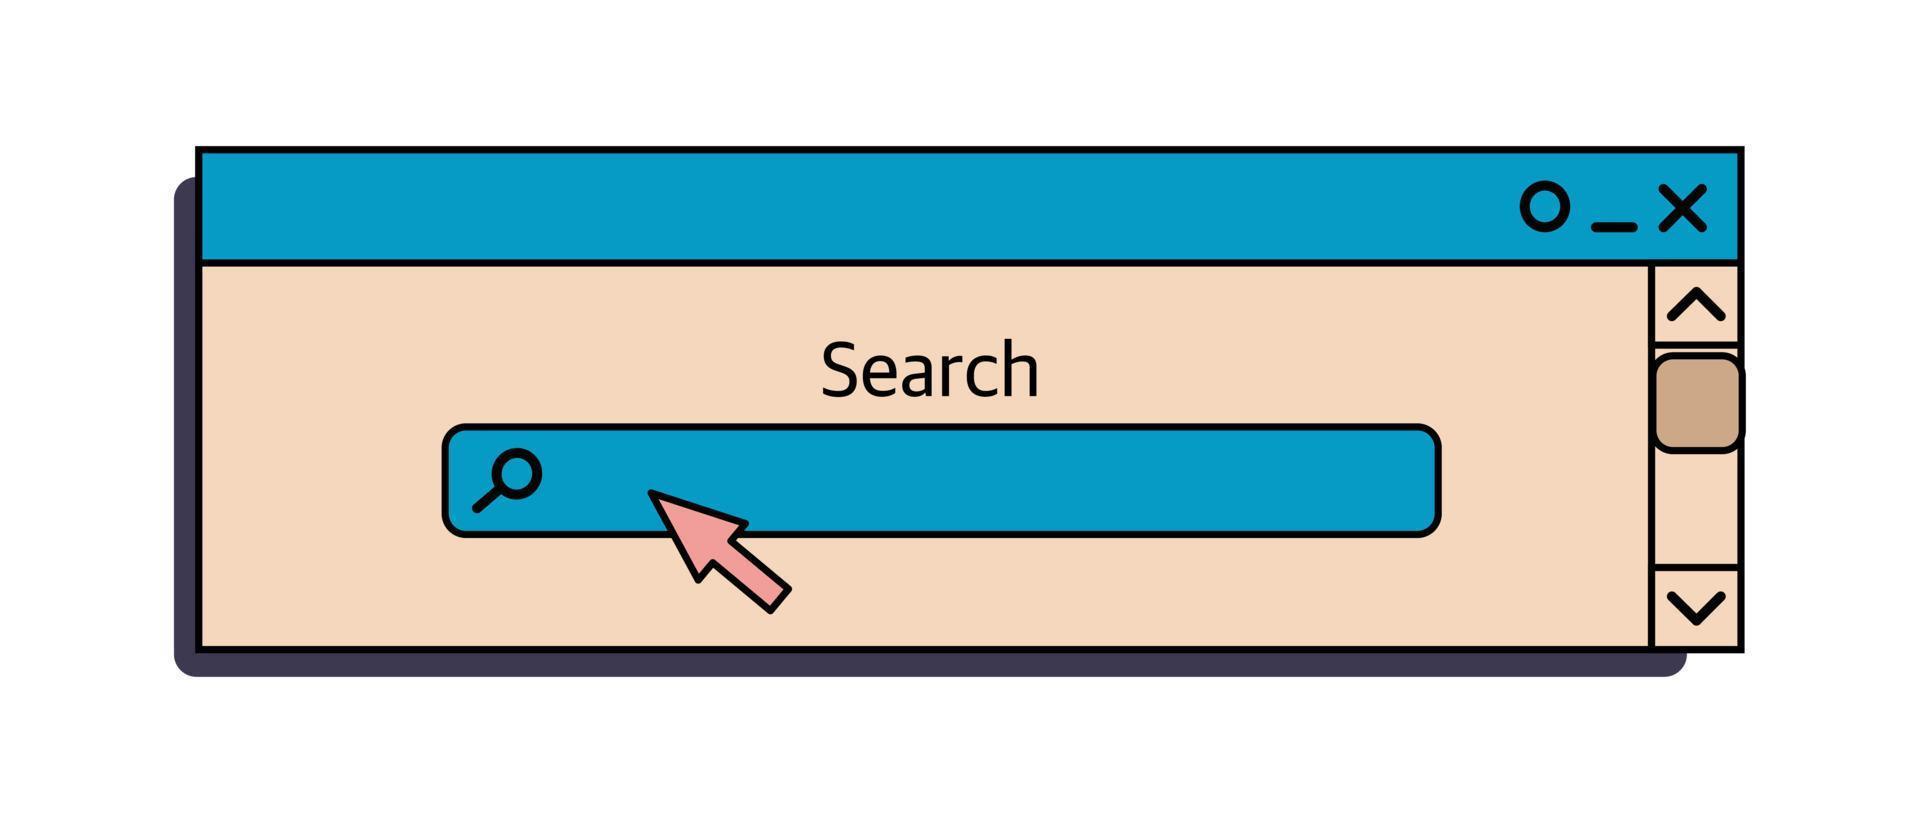 la barra de búsqueda es un elemento de interfaz de una vieja PC con Windows de los años 90. en onda de vapor de estilo retro. ilustración vectorial vector